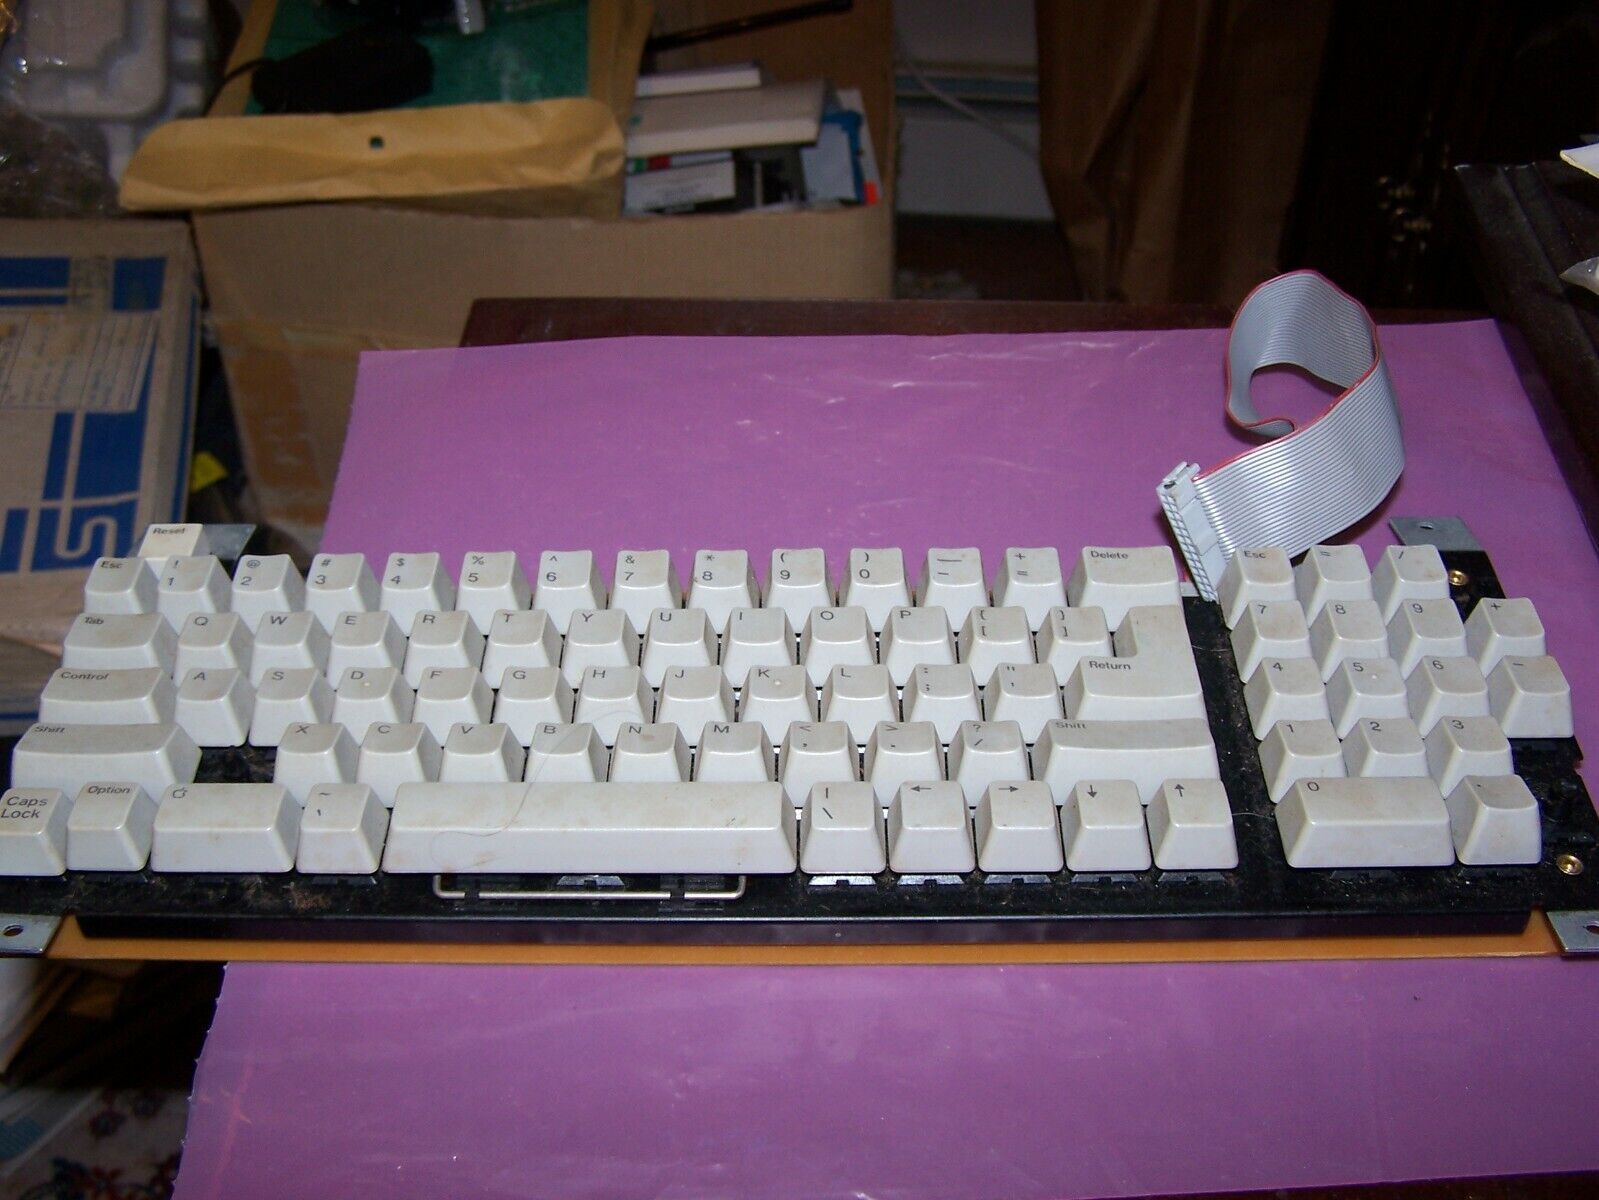 Vintage Apple IIe keyboard - Estate Sale SOLD AS IS